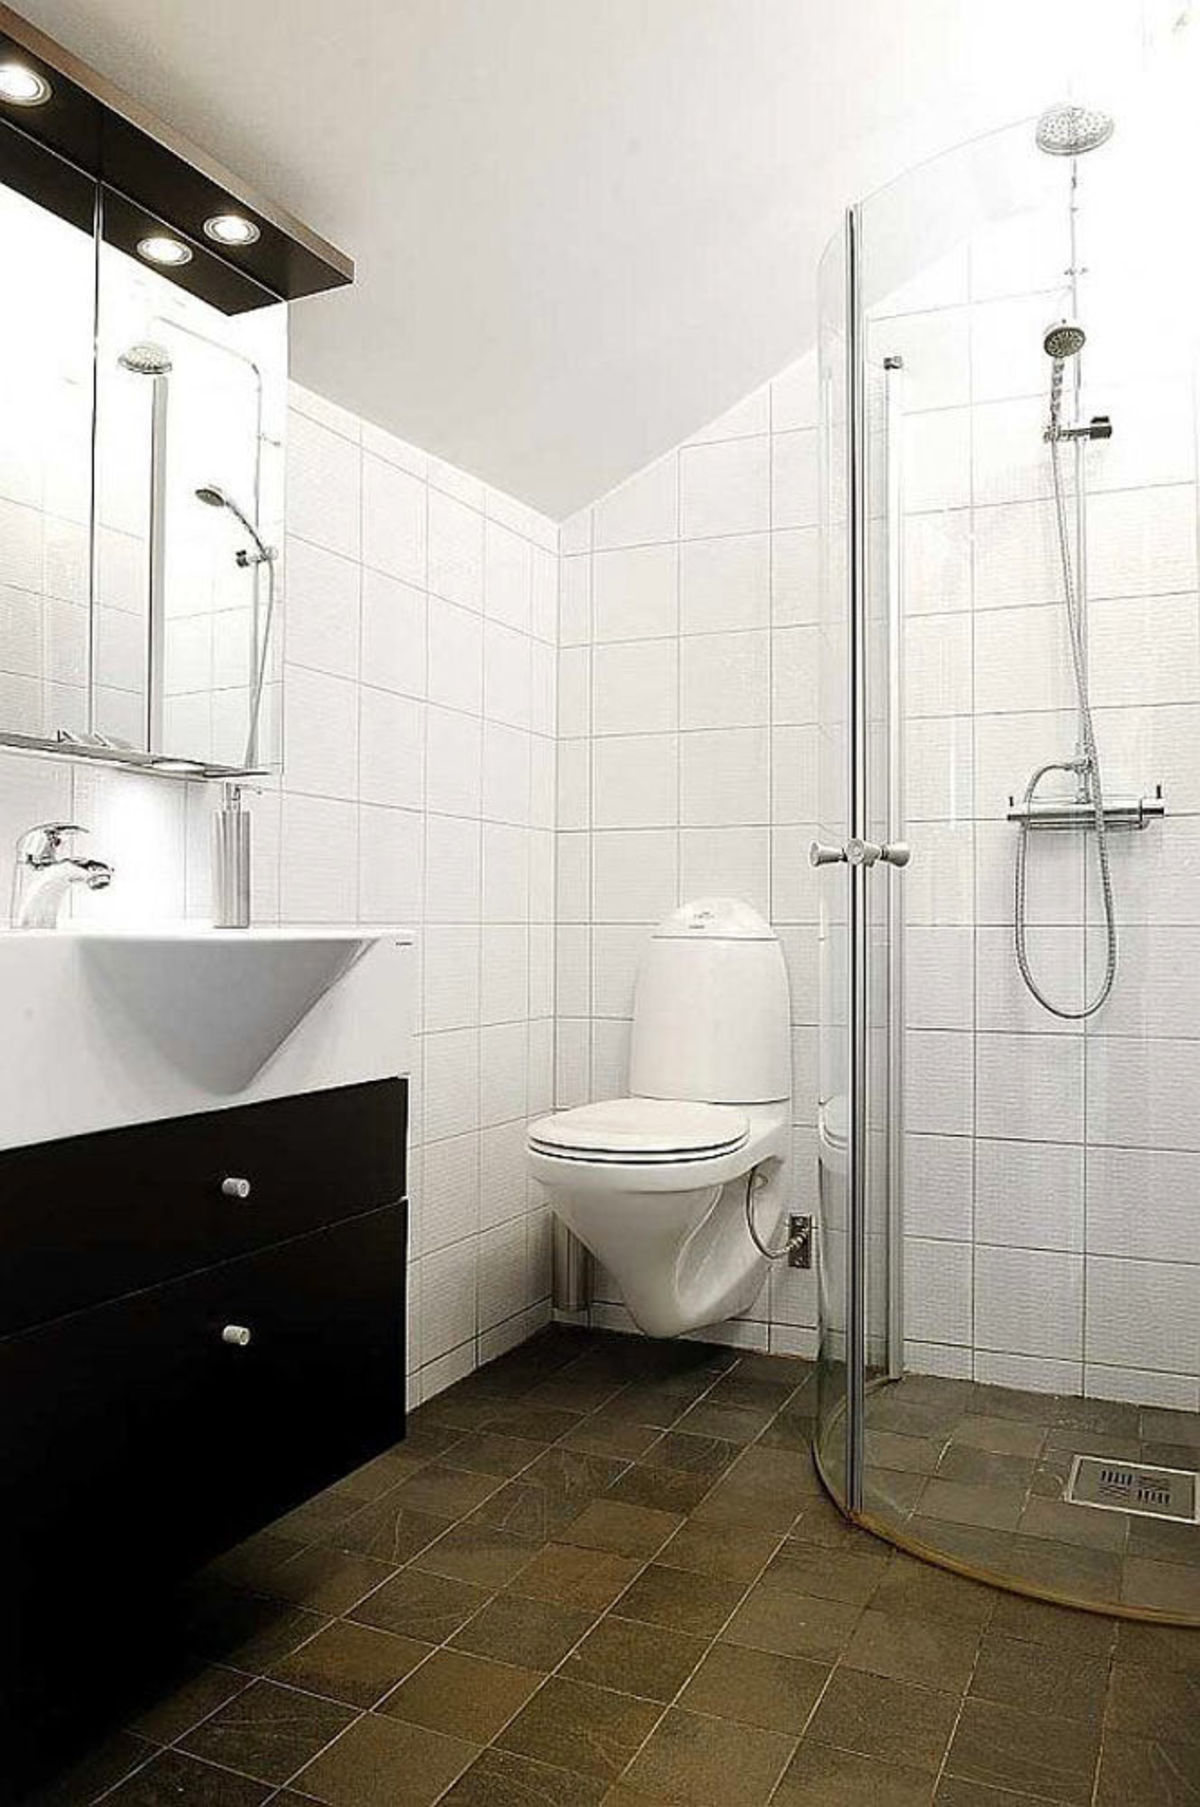 Ванная комната без ванны без поддона. Душевые комнаты. Ванная комната с душевой. Планировка ванной комнаты с душевым поддоном. Маленькая ванная с душевой кабиной.